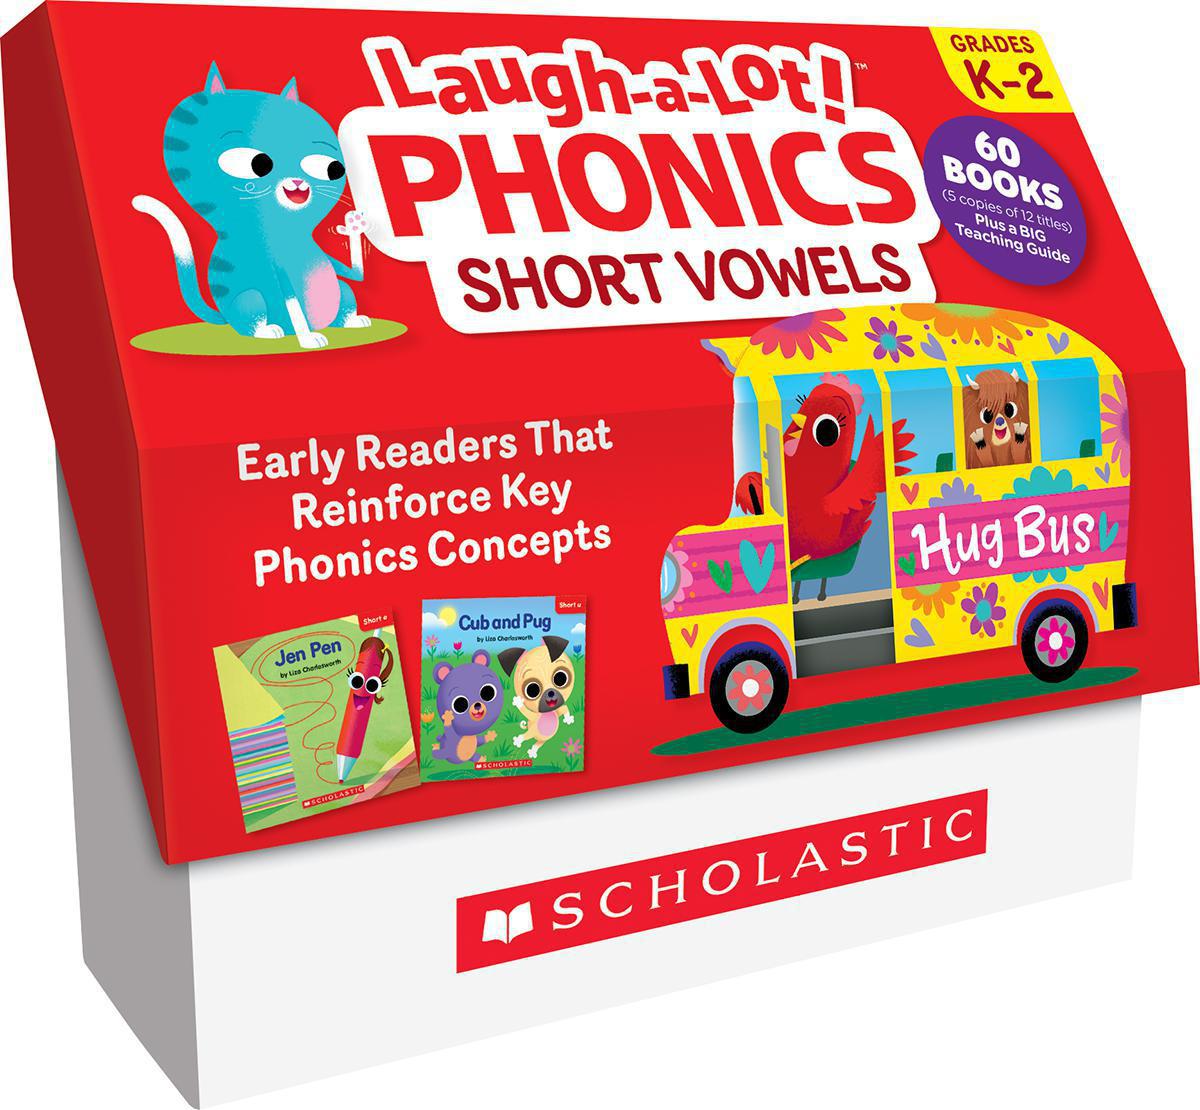  Laugh-a-Lot! Phonics: Short Vowels Classroom Set 